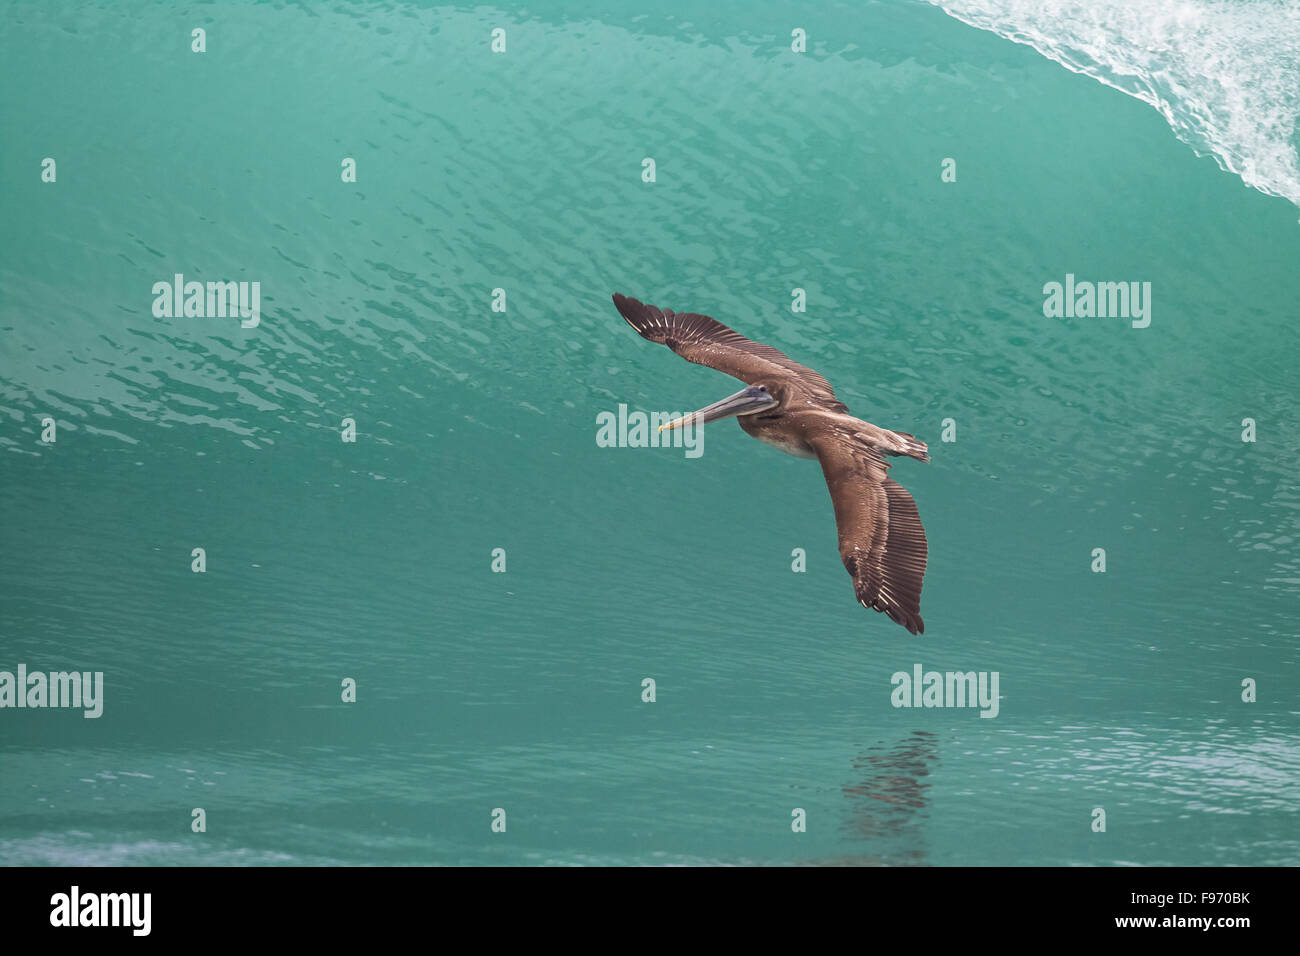 Brown pelican, Pelecanus occidentalis, Volo sopra il mare, osa peninsula, Costa Rica Foto Stock